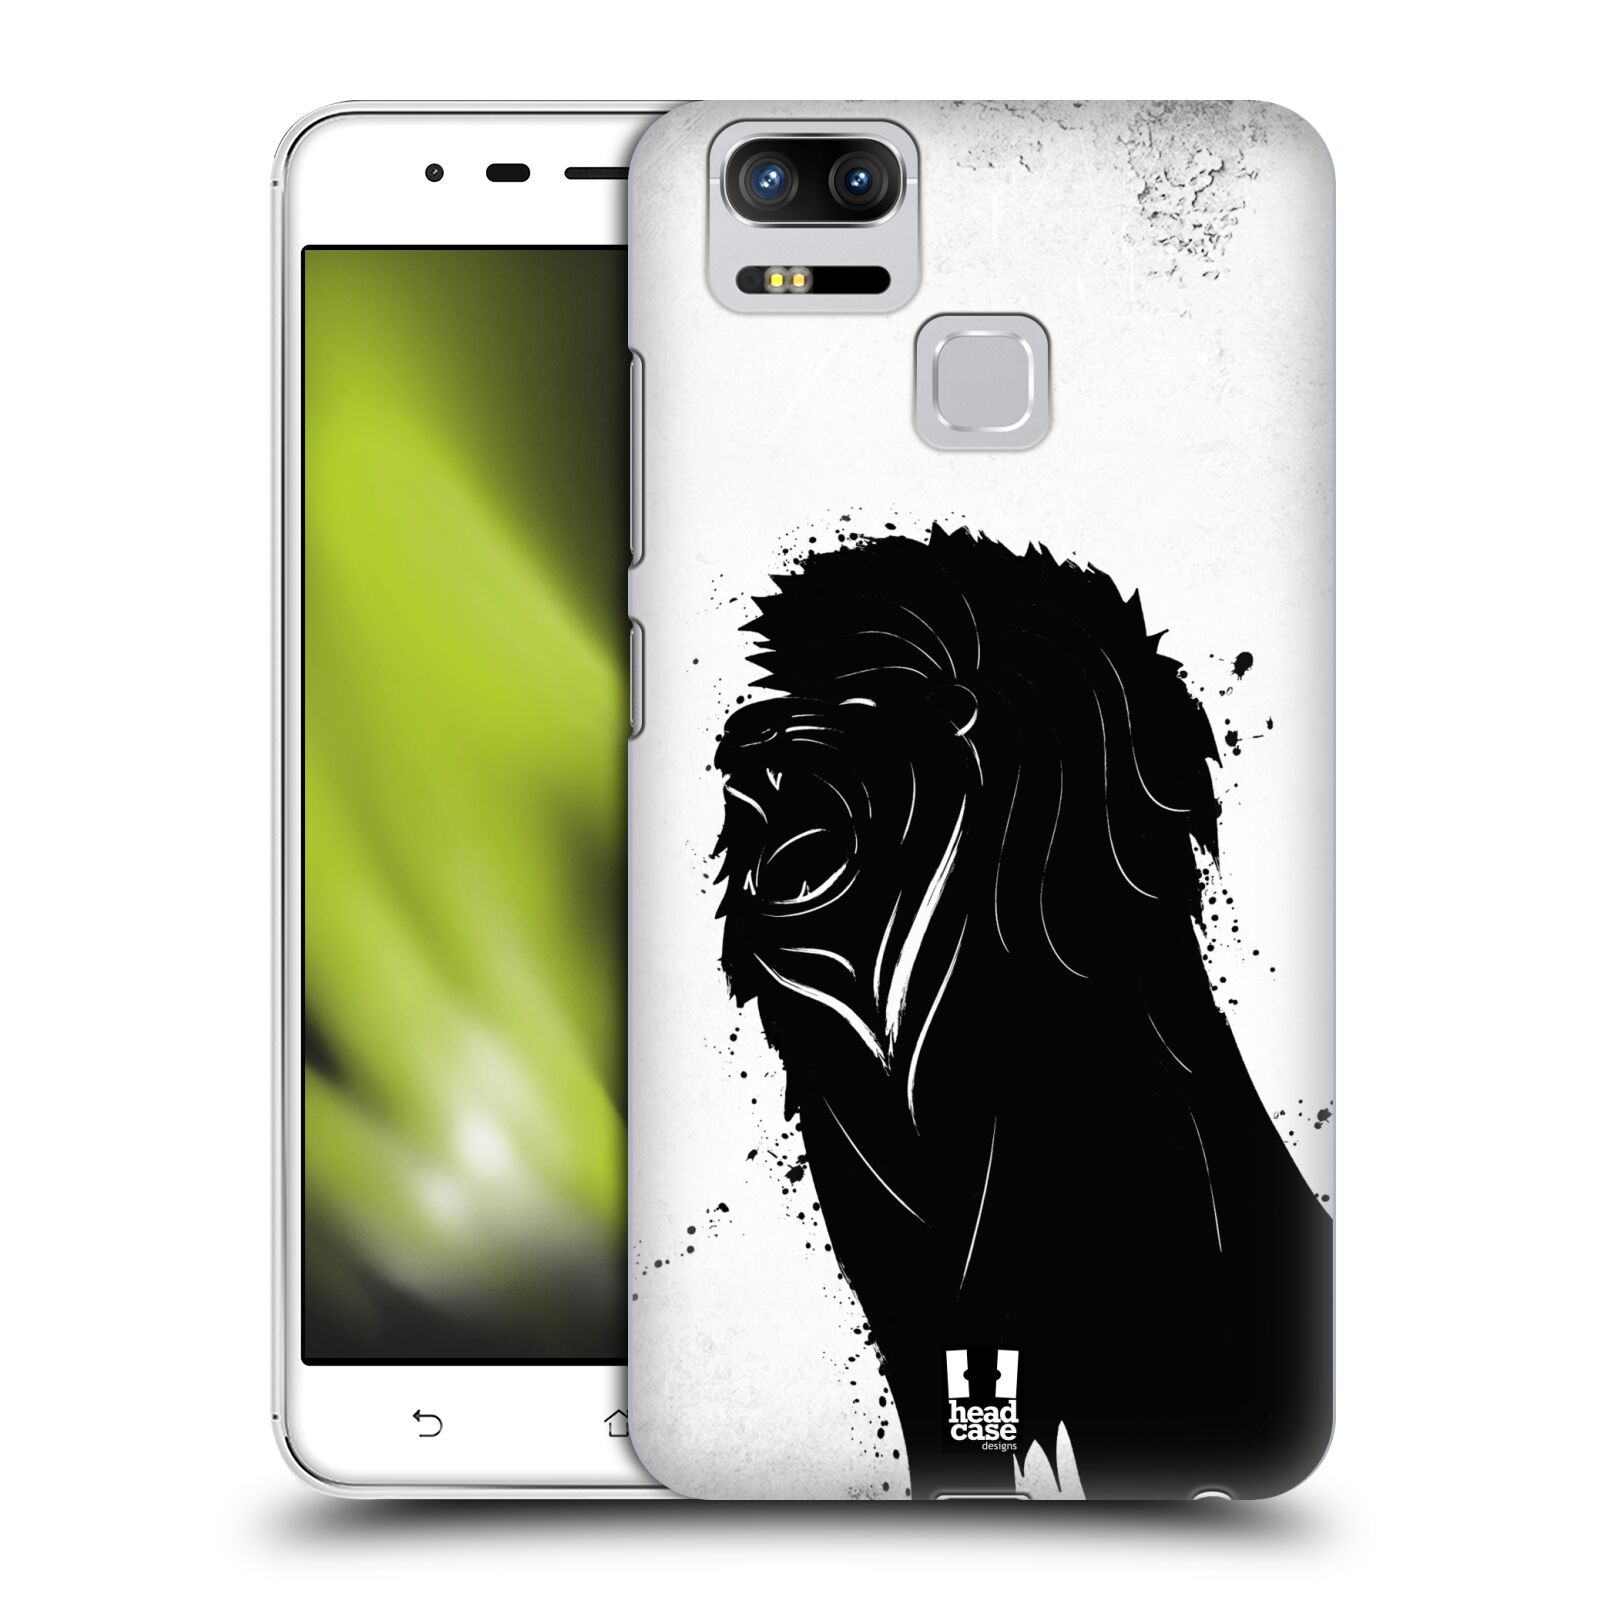 HEAD CASE plastový obal na mobil Asus Zenfone 3 Zoom ZE553KL vzor Kresba tuš zvíře lev